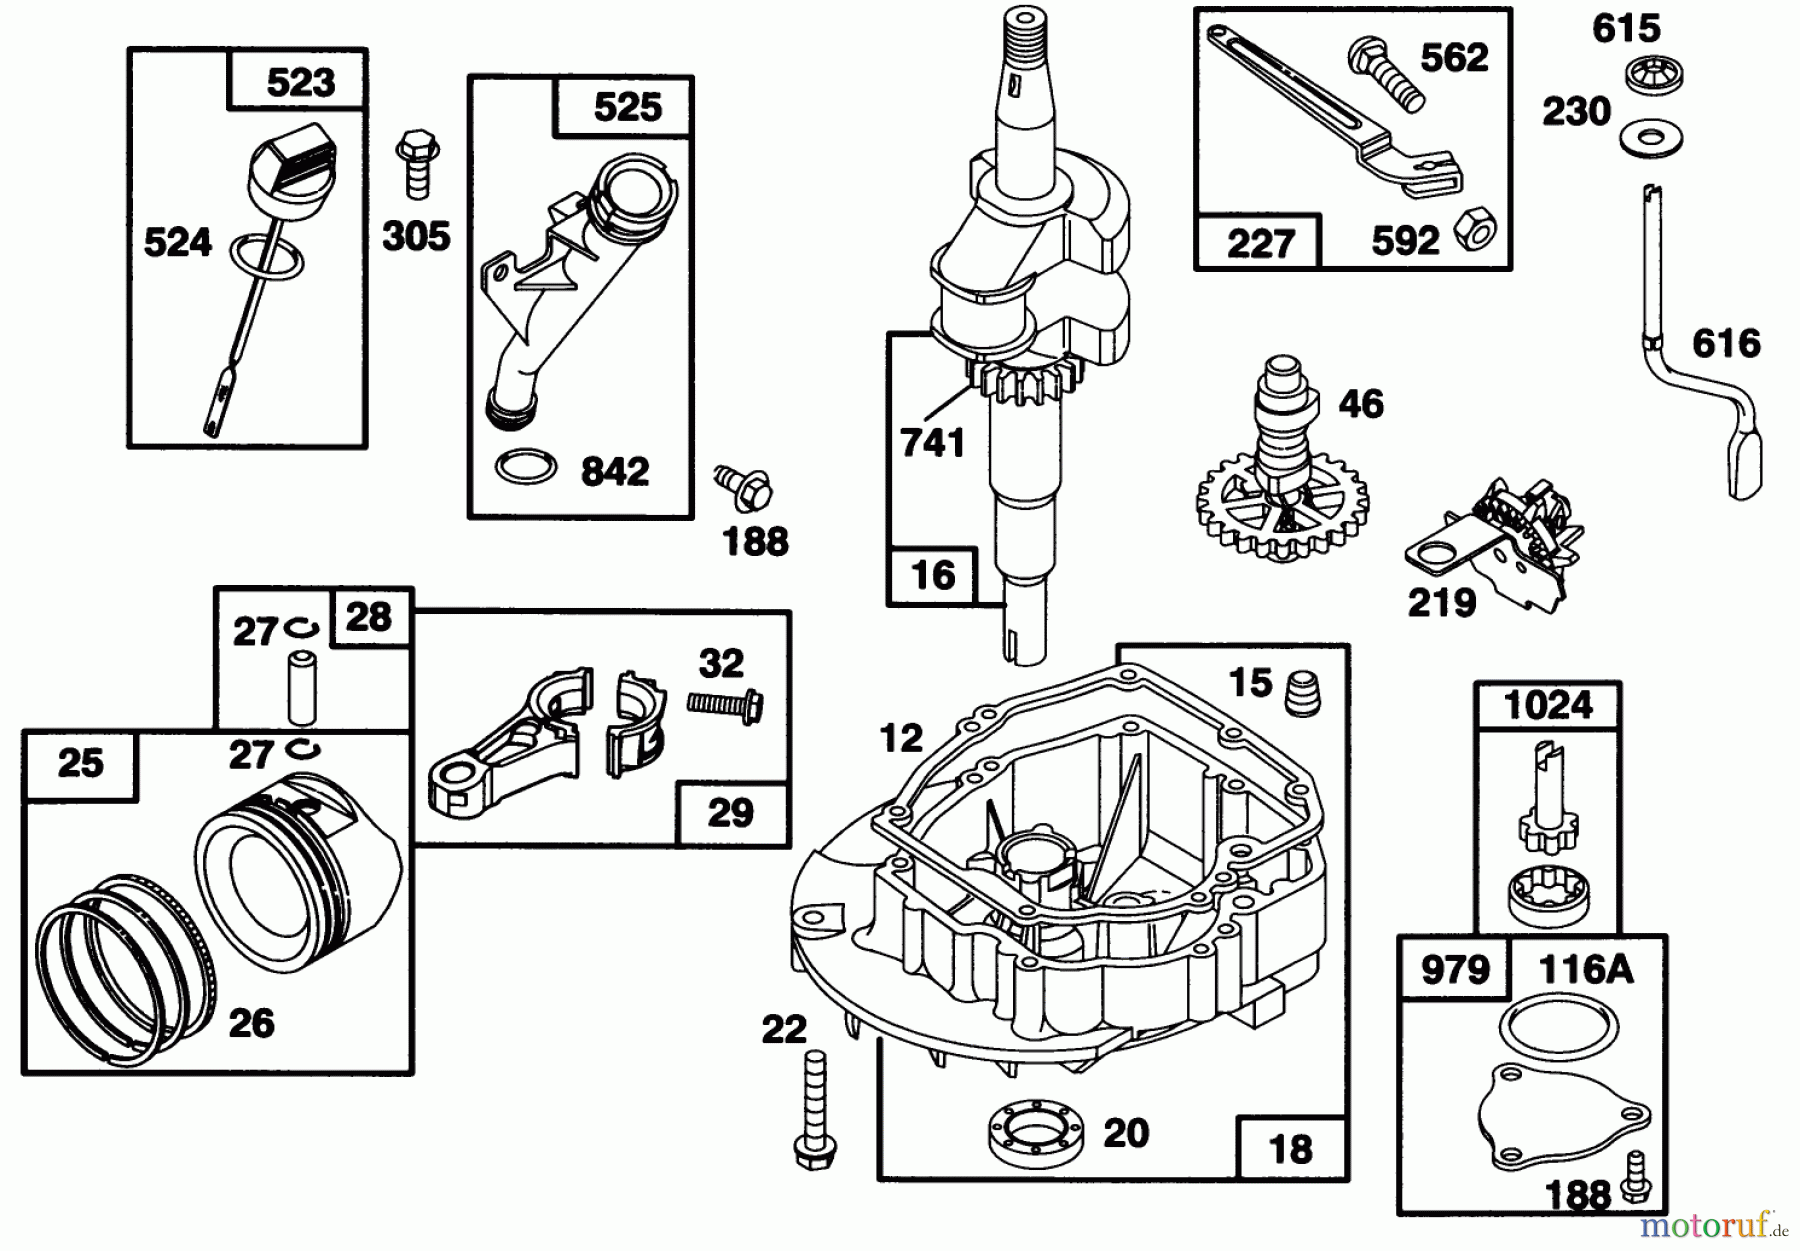  Toro Neu Mowers, Walk-Behind Seite 1 20761B - Toro Lawnmower, 1993 (39000001-39999999) ENGINE GTS 150 #2